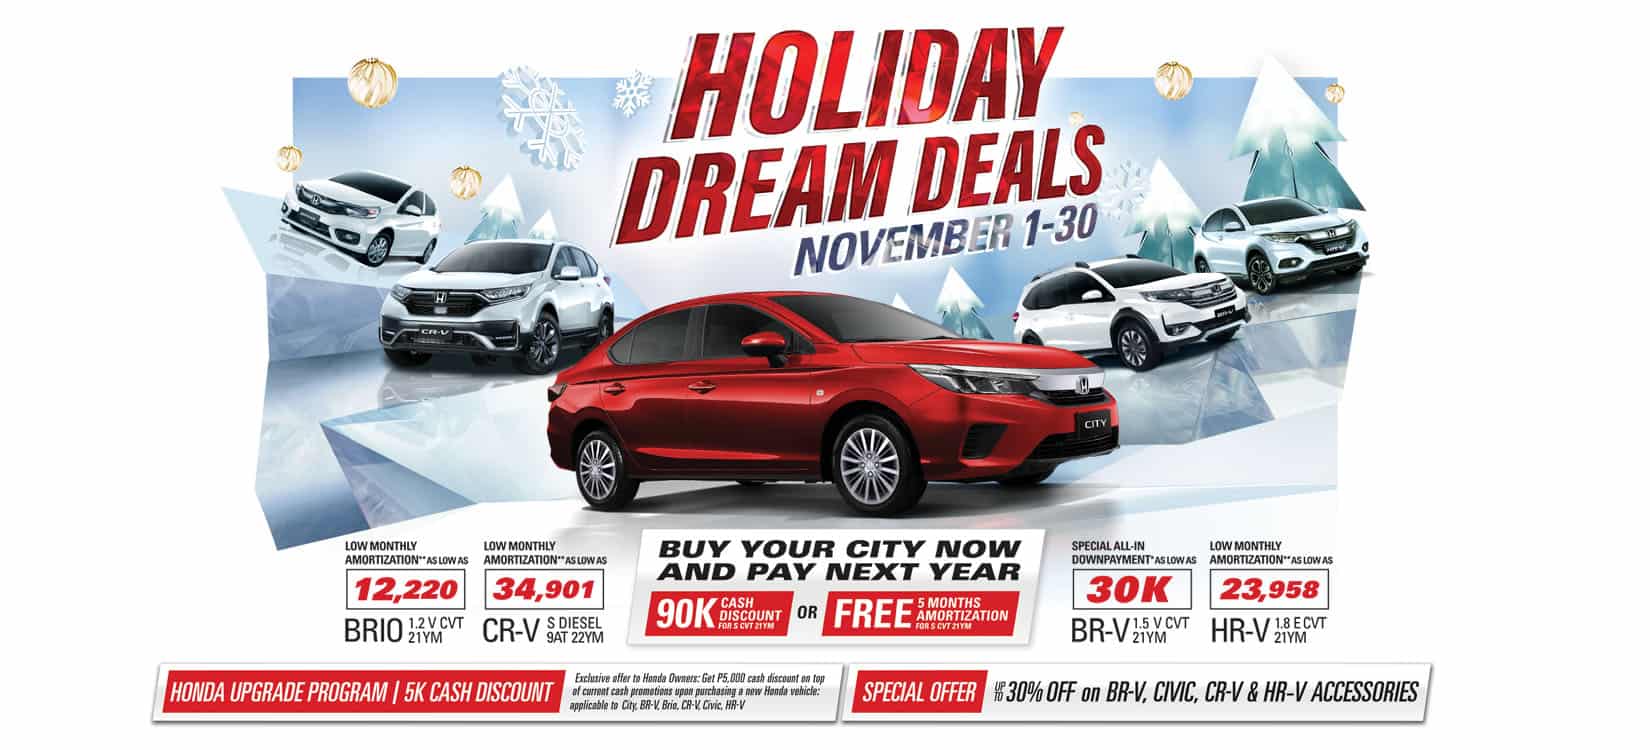 Honda Cars Philippines › Celebrate the holiday season with Honda’s